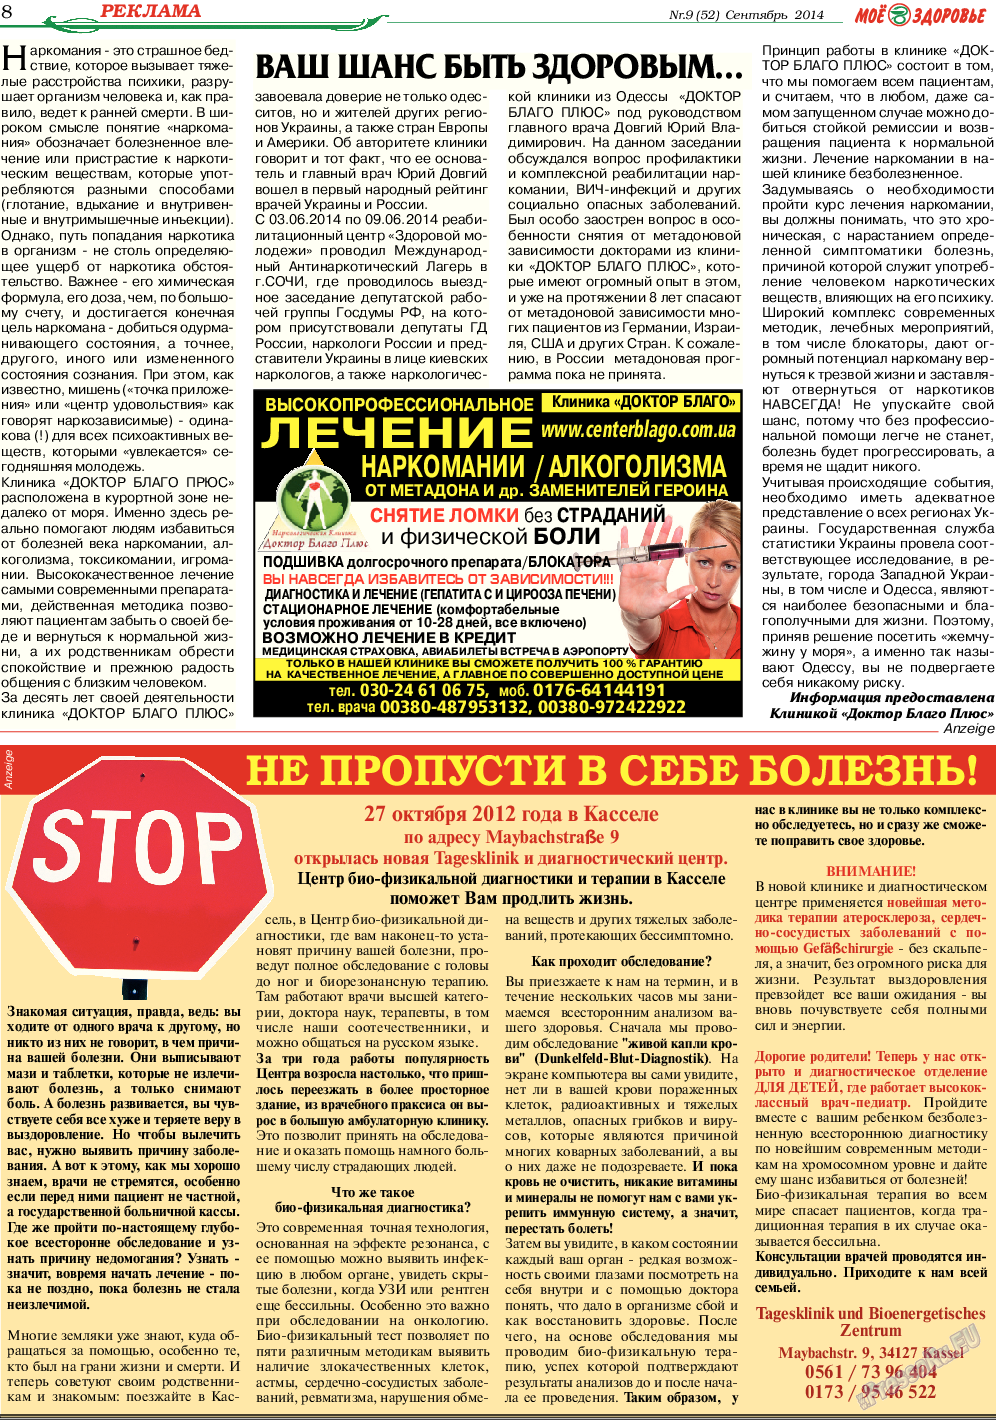 Кругозор, газета. 2014 №9 стр.8